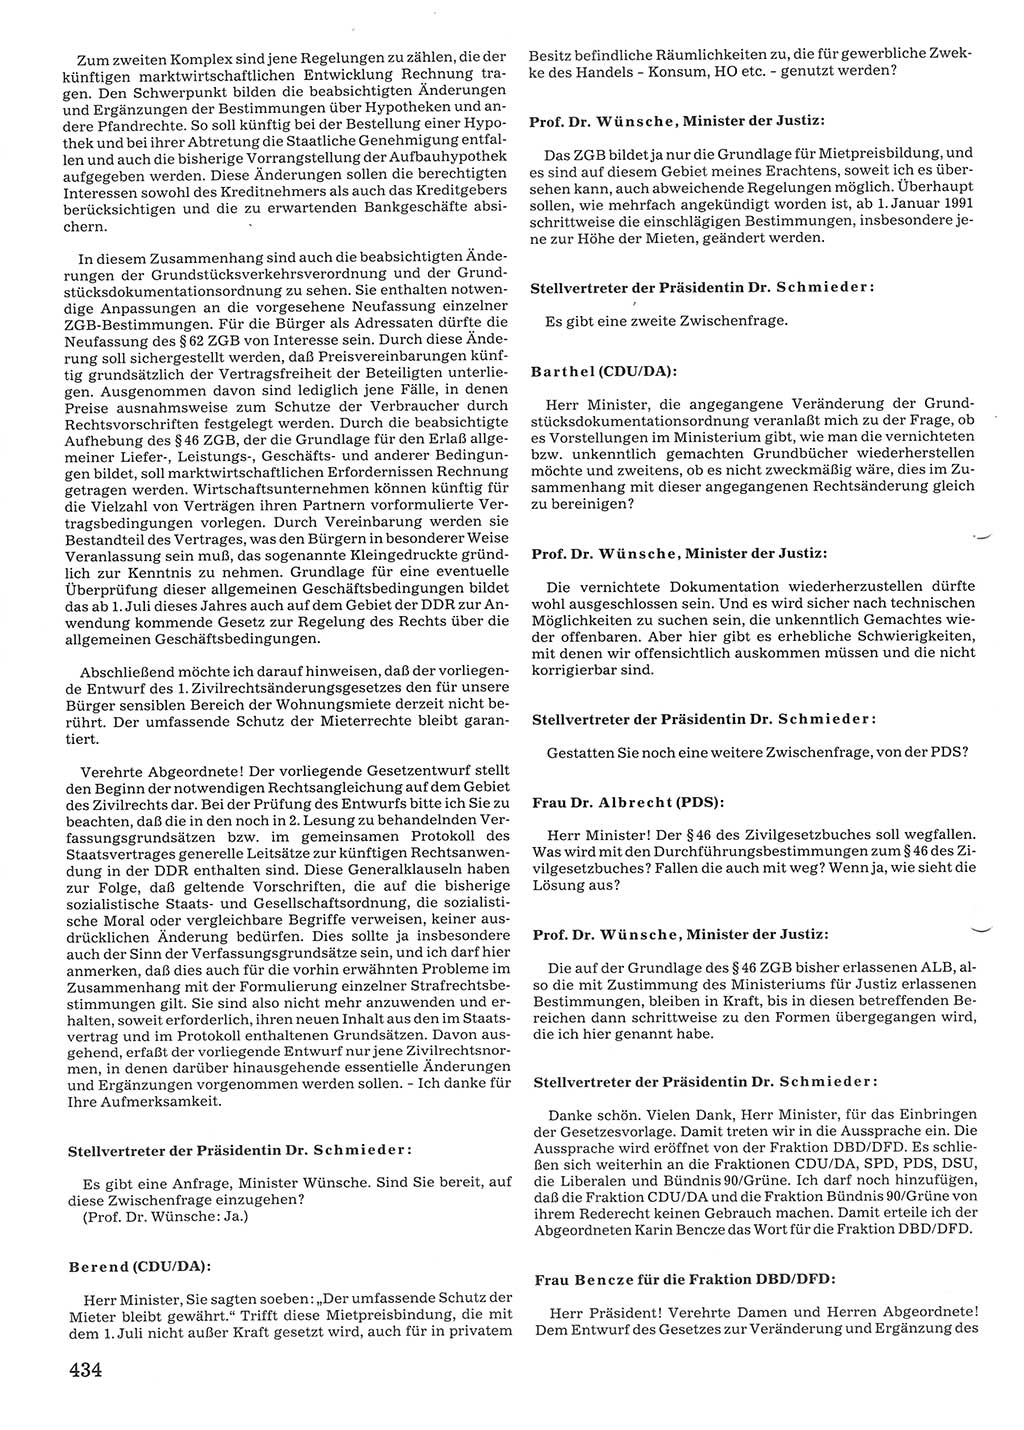 Tagungen der Volkskammer (VK) der Deutschen Demokratischen Republik (DDR), 10. Wahlperiode 1990, Seite 434 (VK. DDR 10. WP. 1990, Prot. Tg. 1-38, 5.4.-2.10.1990, S. 434)